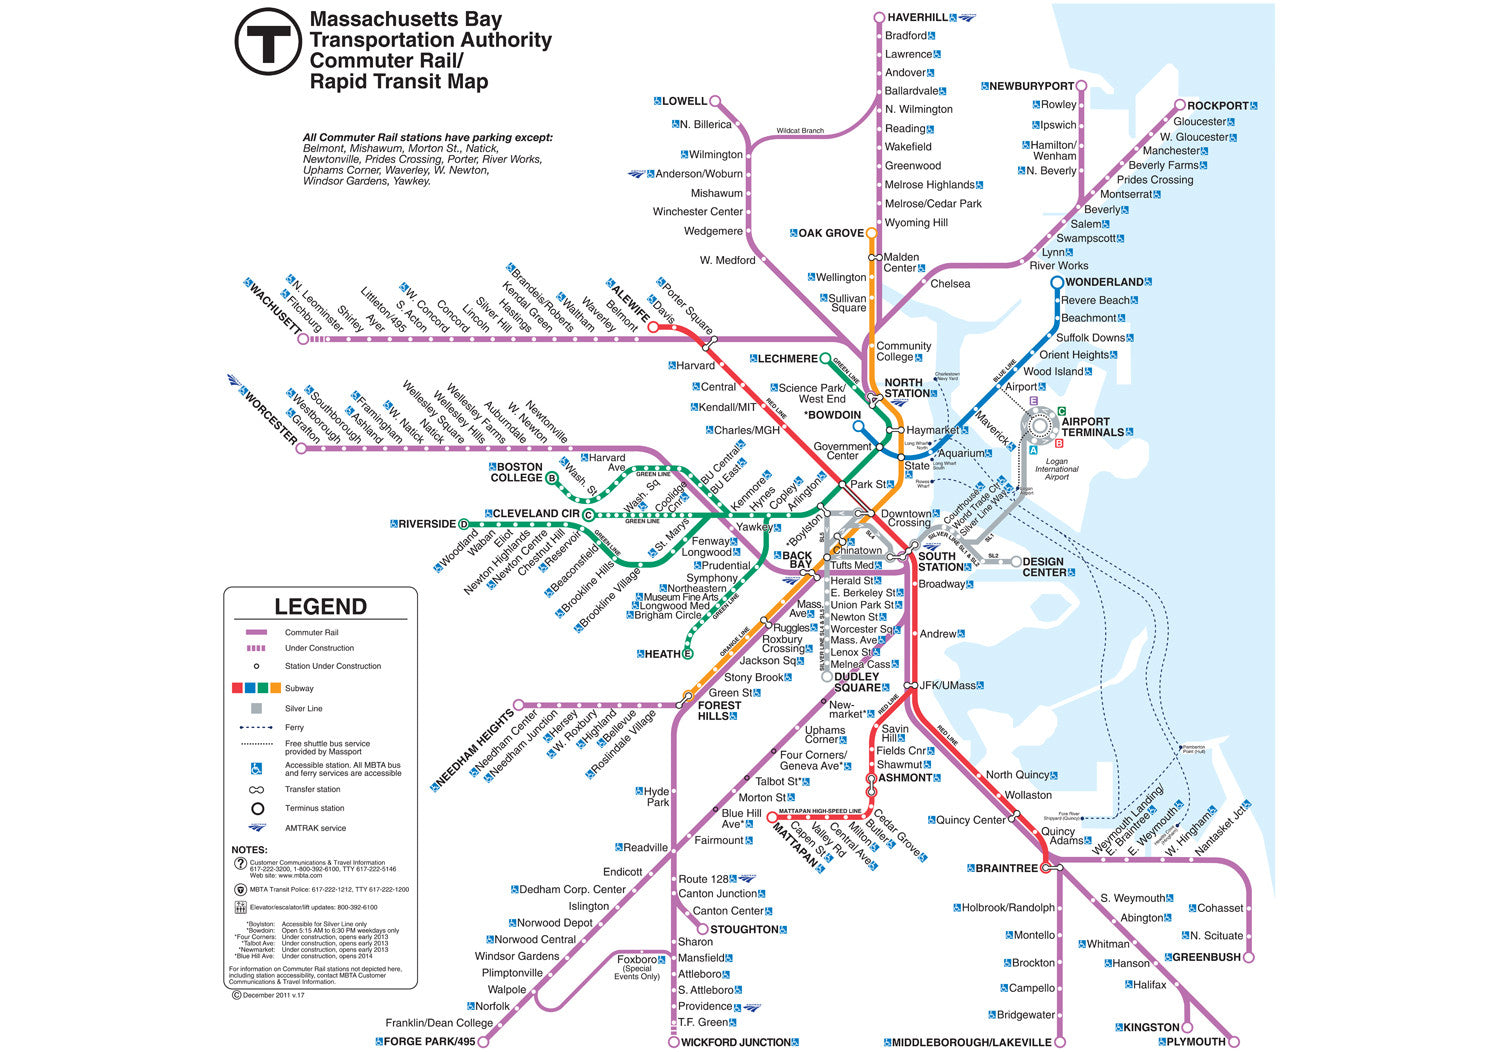 2011 MBTA Commuter Rail Map w/Rapid Transit